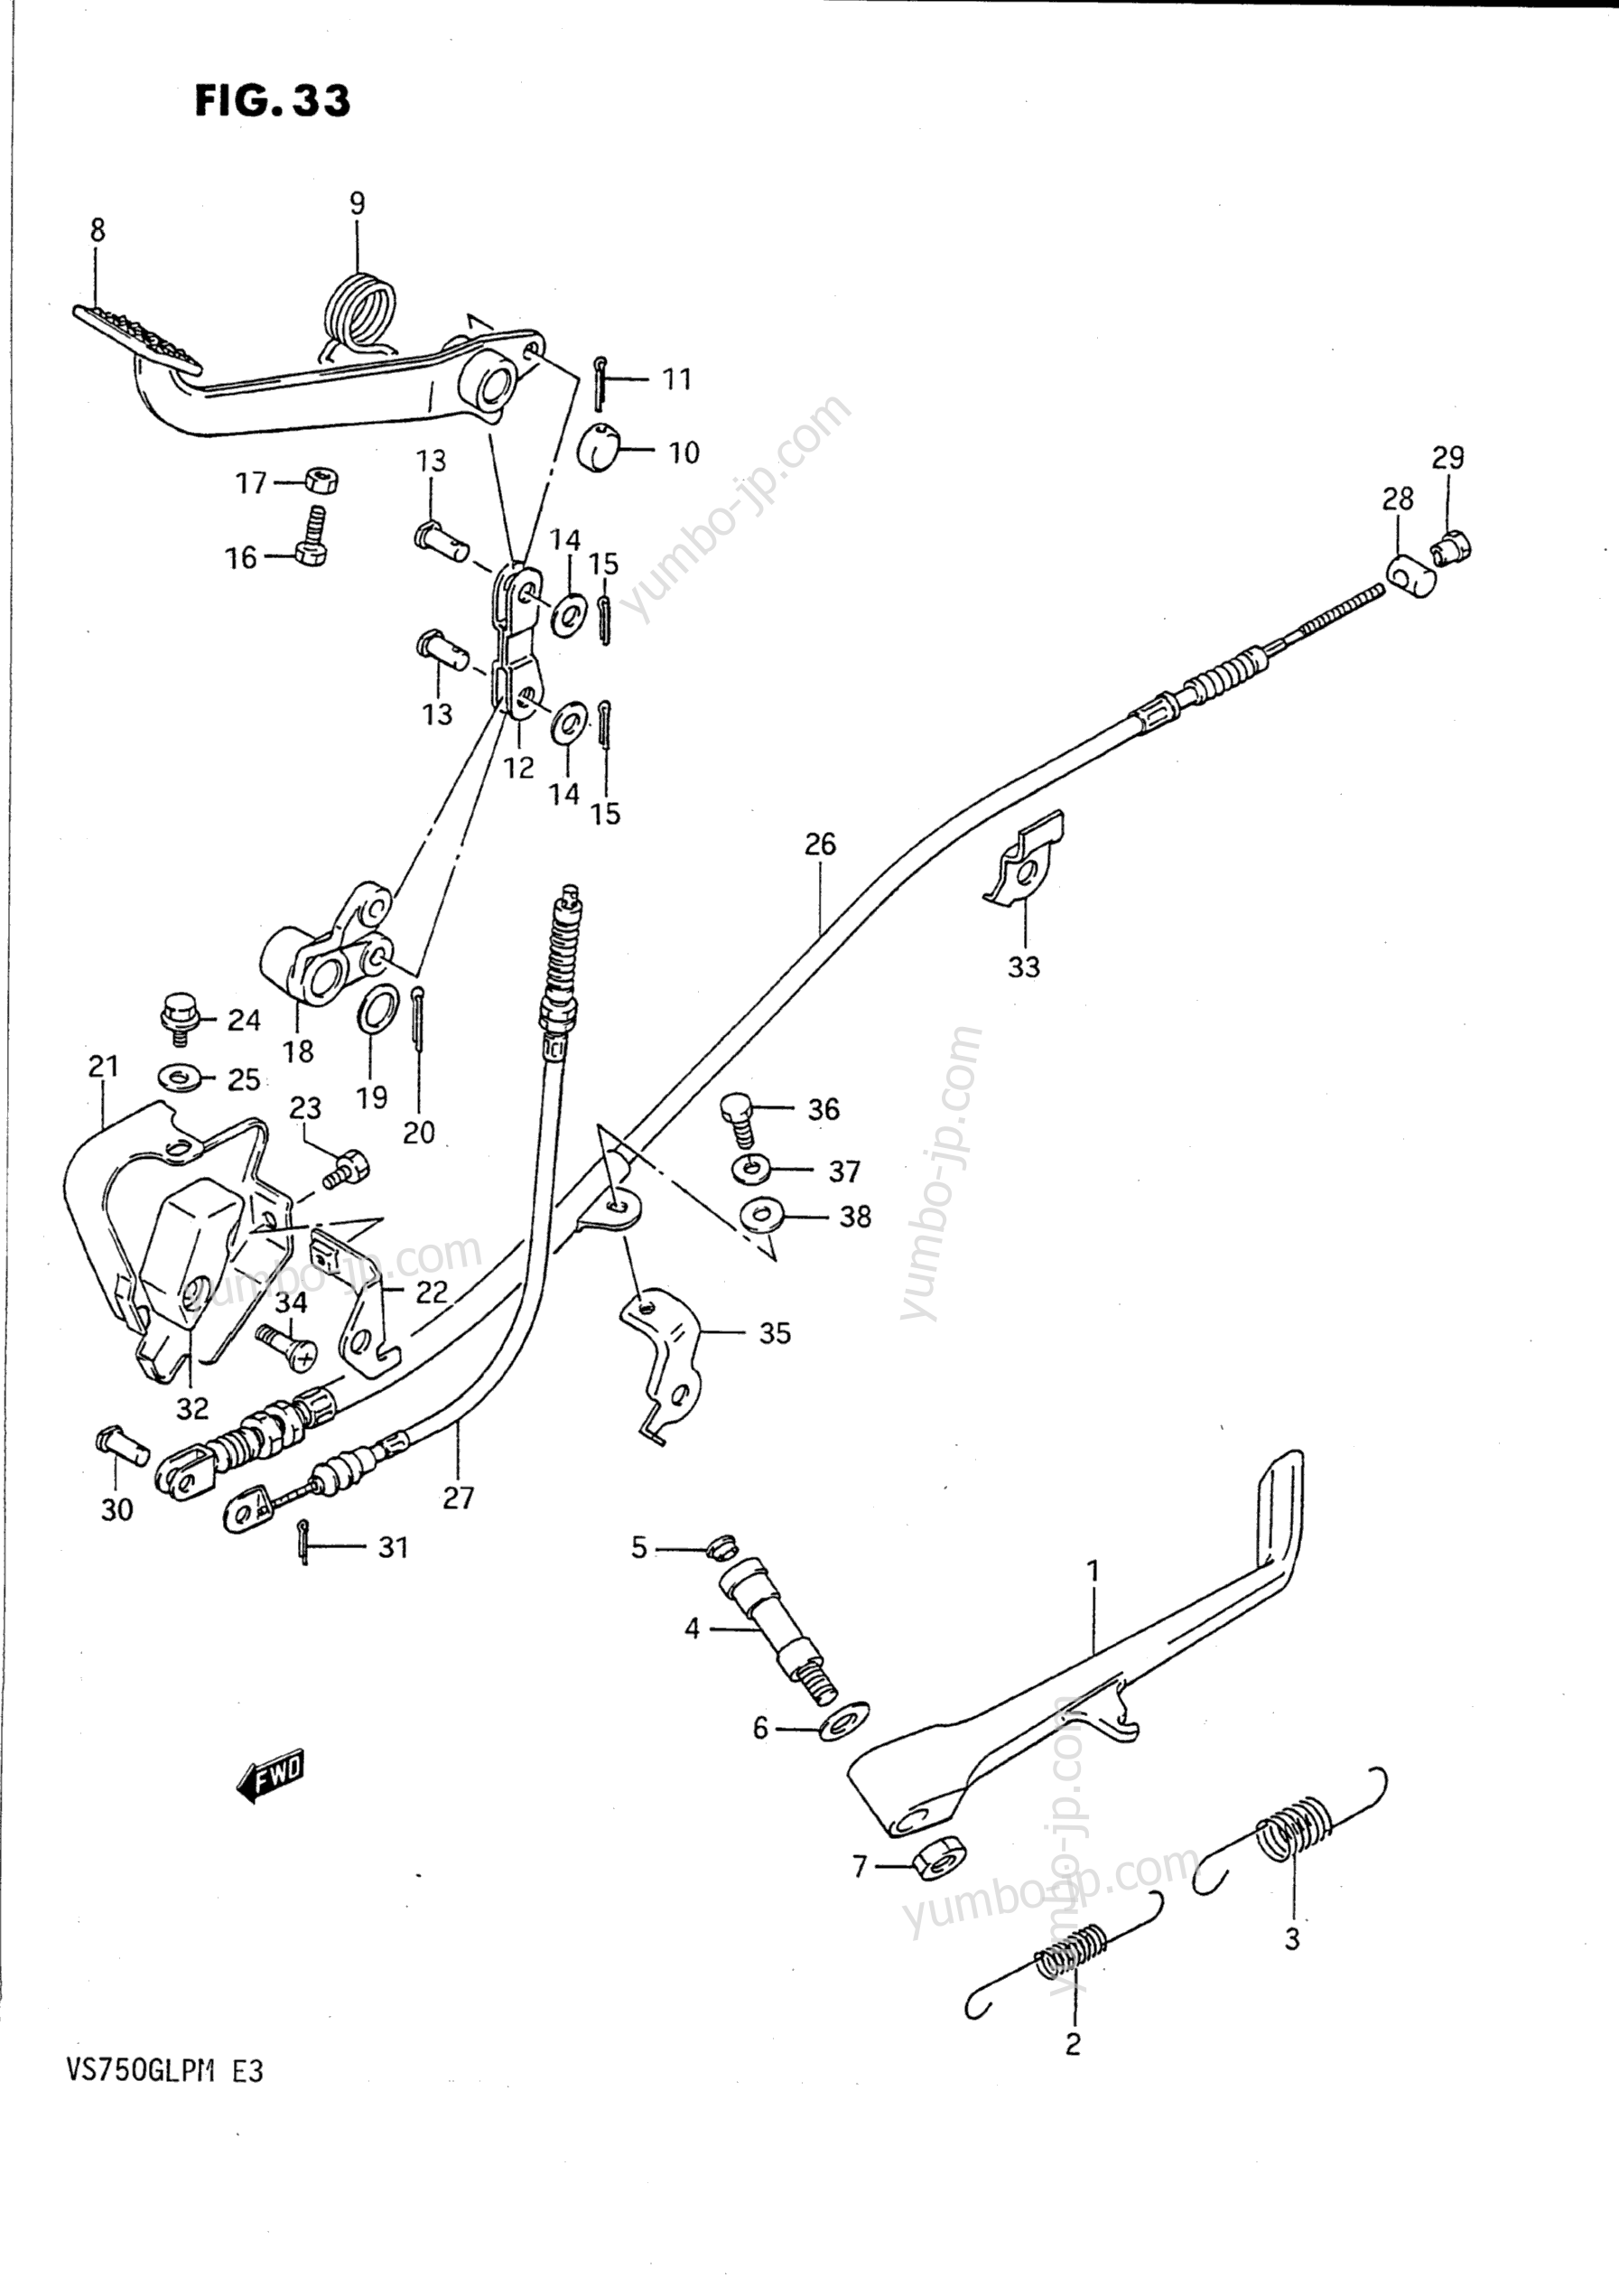 PROP STAND - REAR BRAKE for motorcycles SUZUKI Intruder (VS750GLP) 1989 year